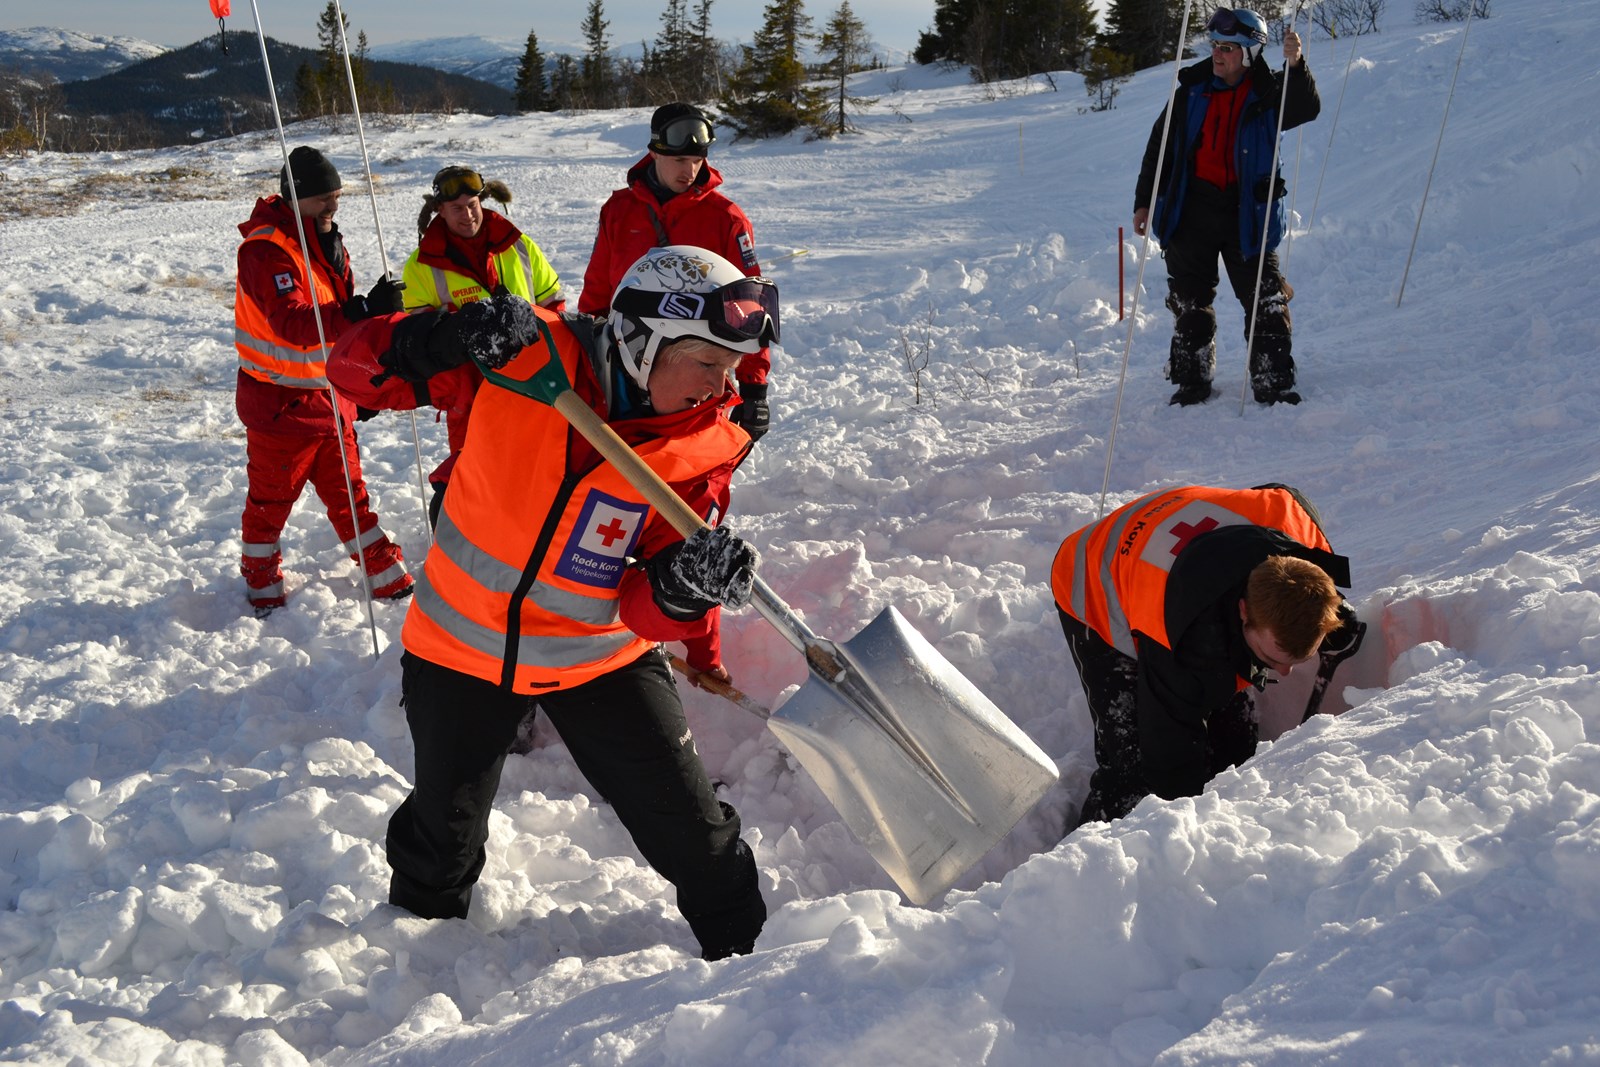 FRIVILLIG INNSATS: I Telemark står nesten 400 frivillige hjelpekorpsere klare til å rykke ut når alarmen går. Her øver noen av dem på livredning i skred i forbindelse med øvelsen Tuddal Triage. (Foto: Bjørn Sodeland)